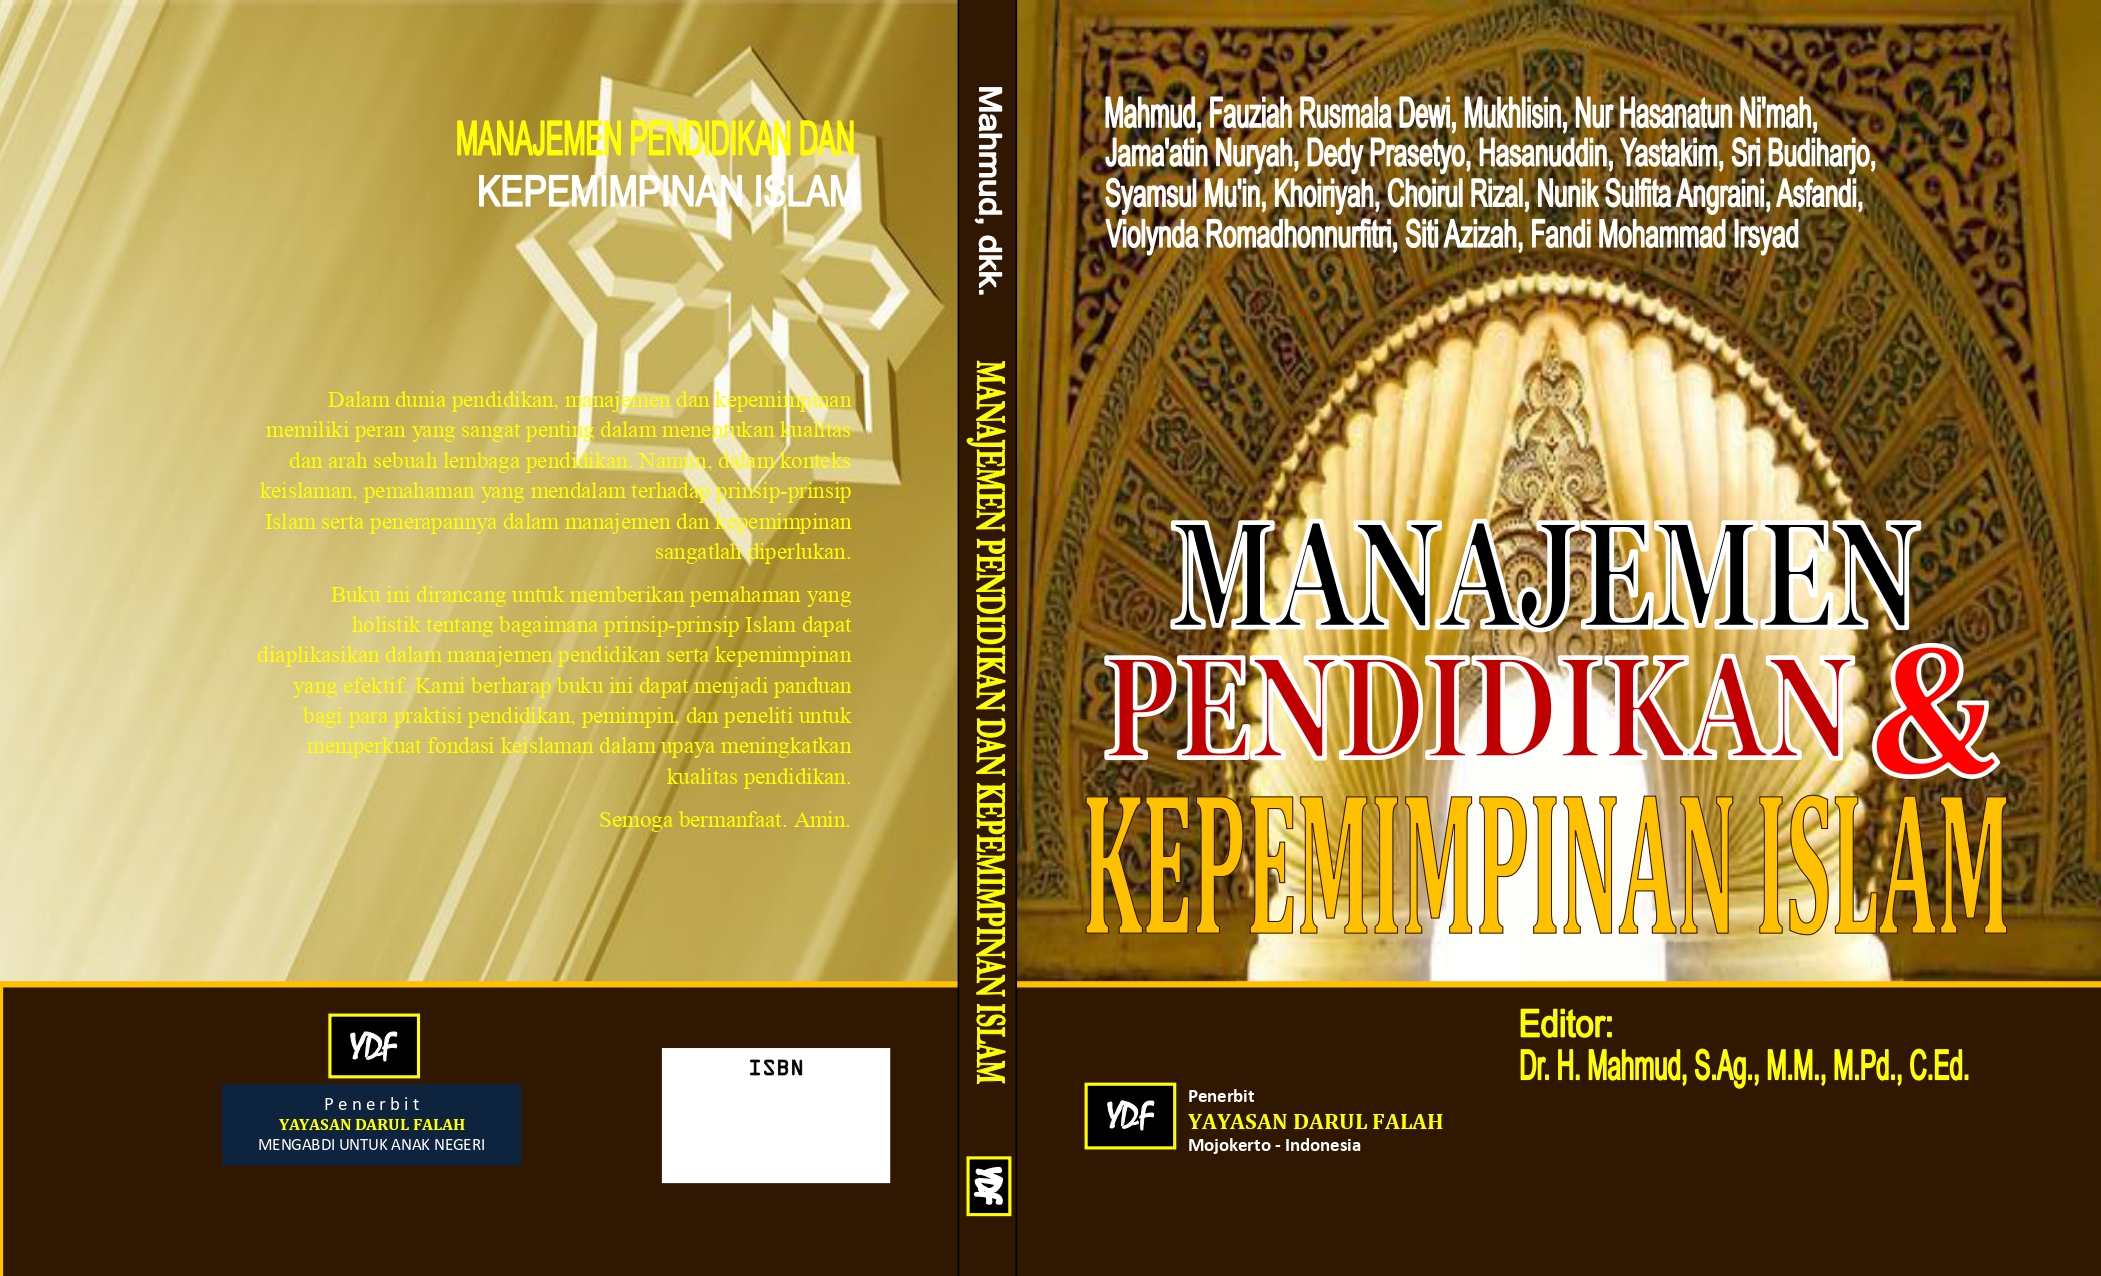 Cover_Manajemen_Pendidikan_Kepemimpan-1_page-0001.jpg